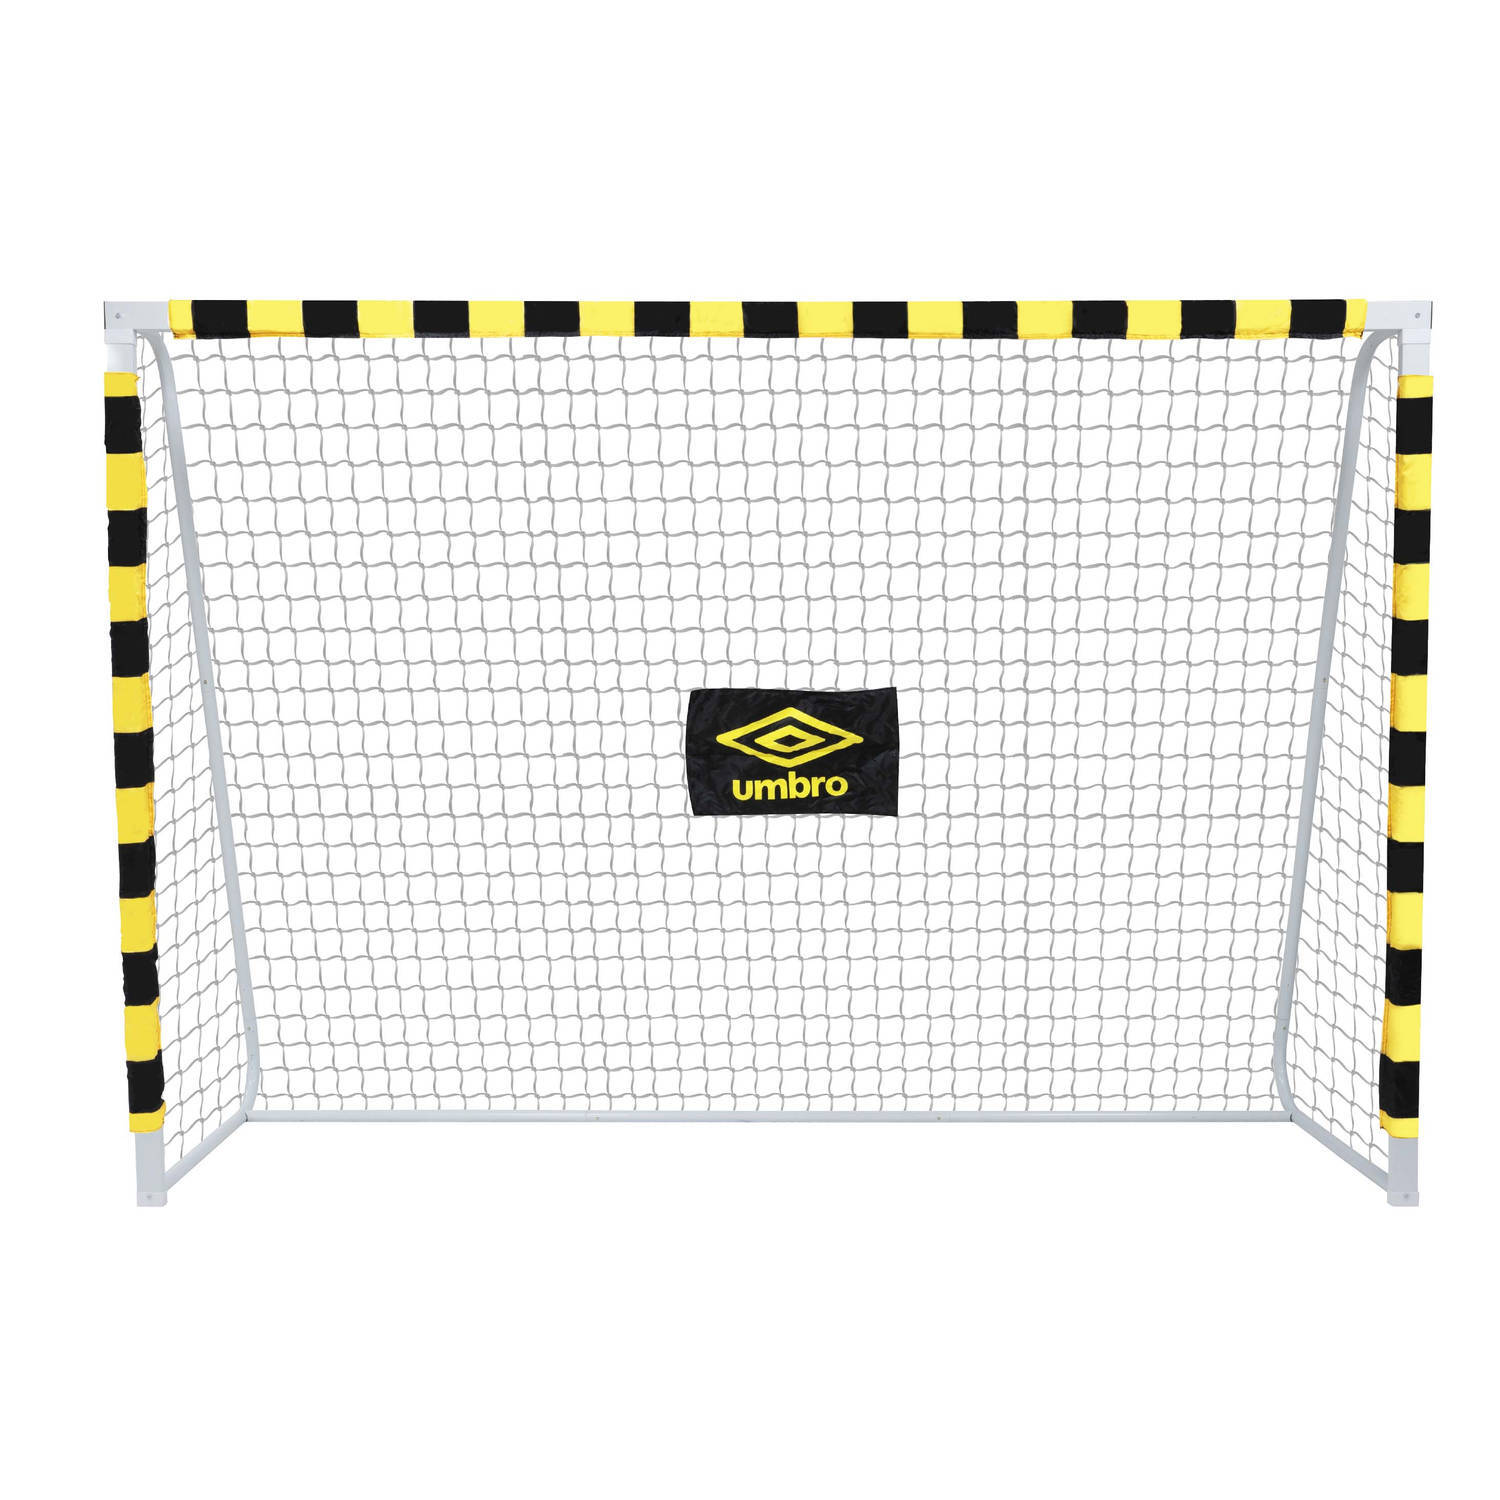 Umbro voetbaldoel - 300 x 200 x 90 cm - metaal - voetbaltrainingsmateriaal - makkelijke montage - zwart/geel